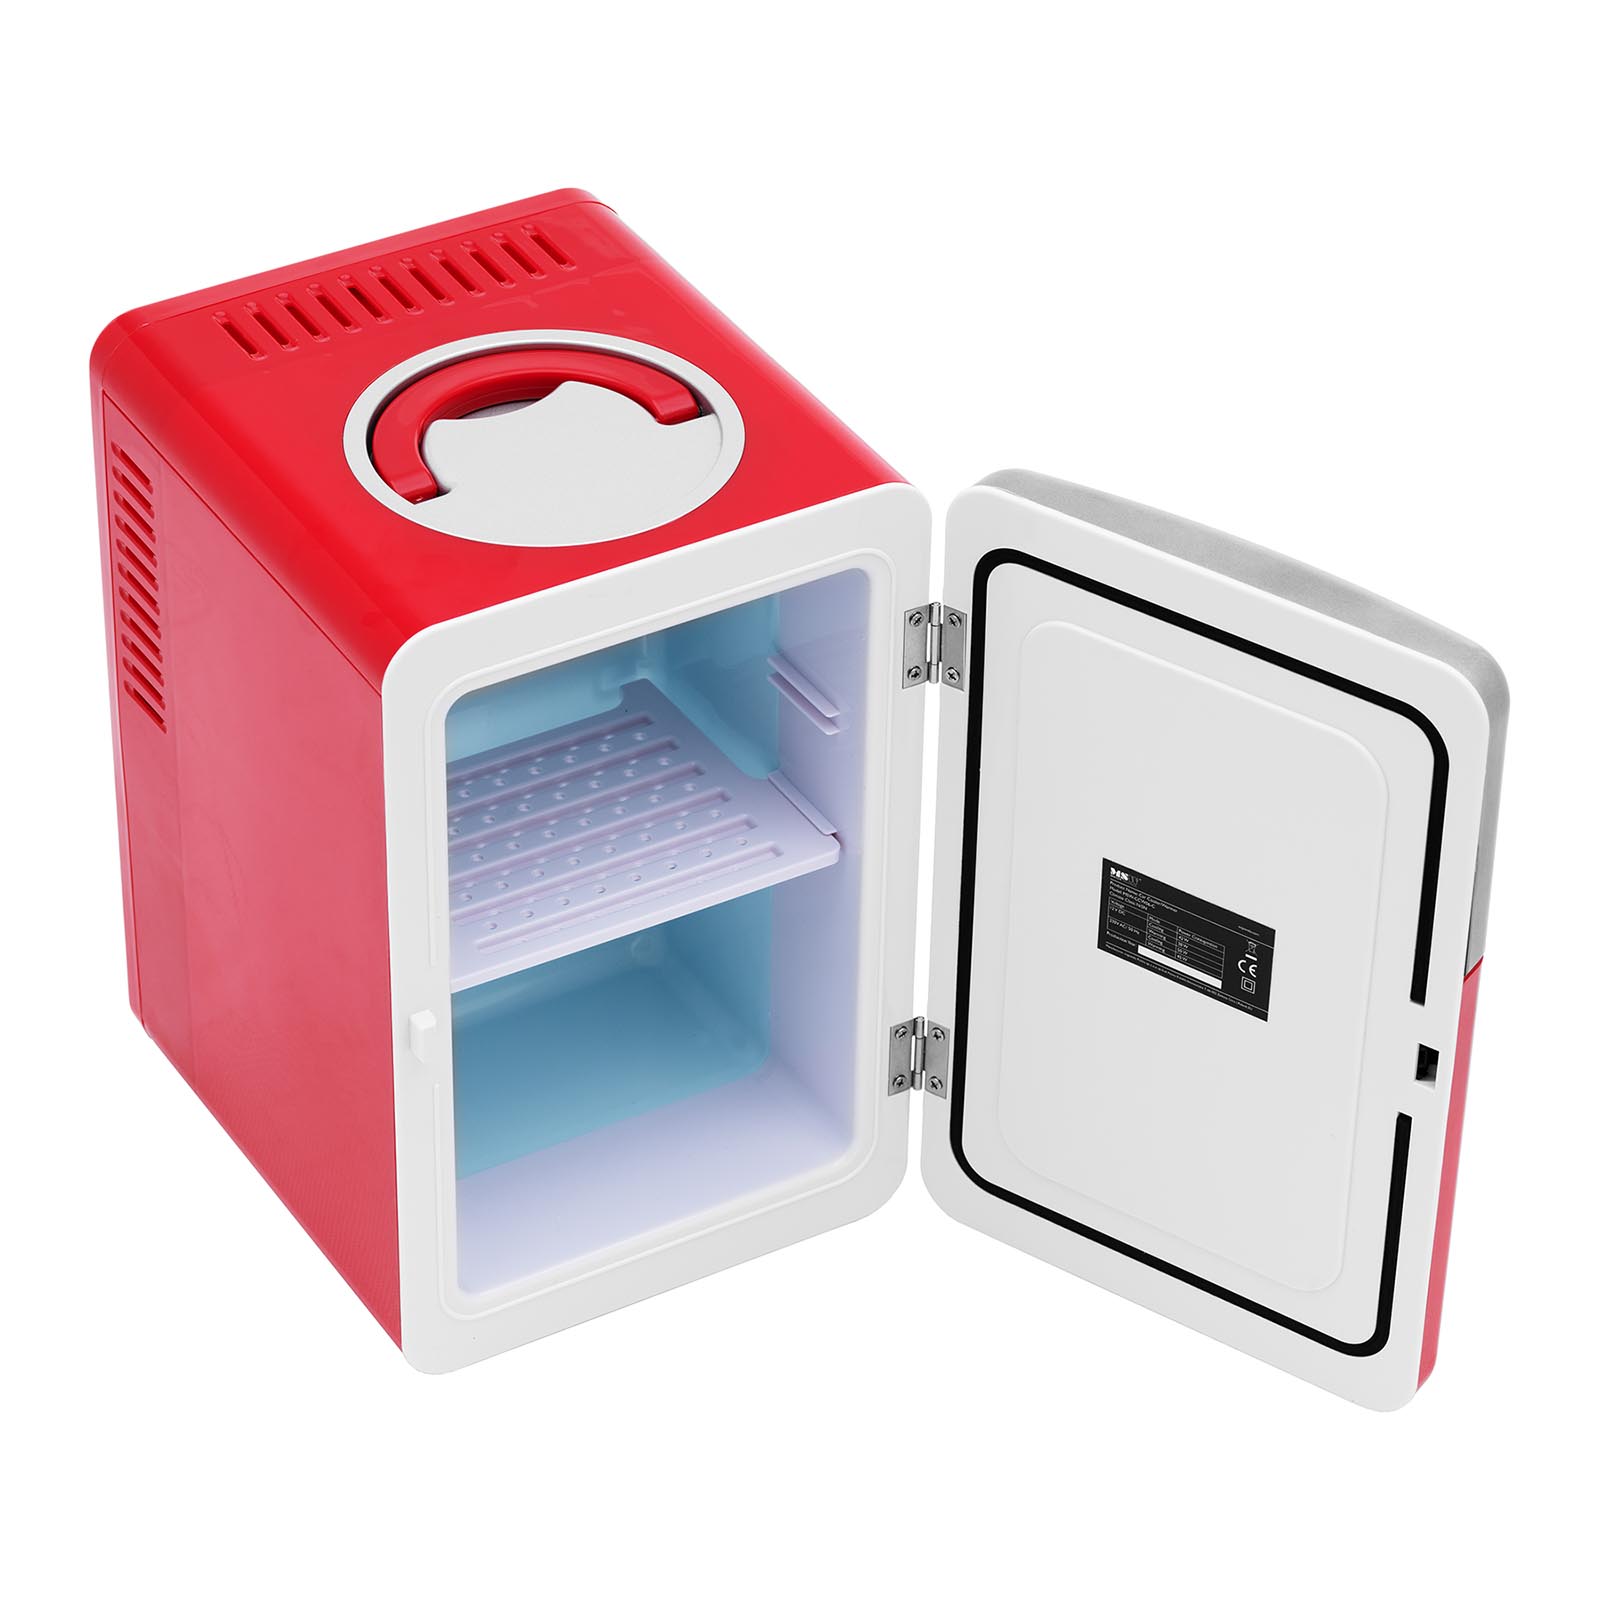 Minikjøleskap 12 V / 230 V - 2-i-1 apparat med holde-varm funksjon - 6 L - Rød/sølv